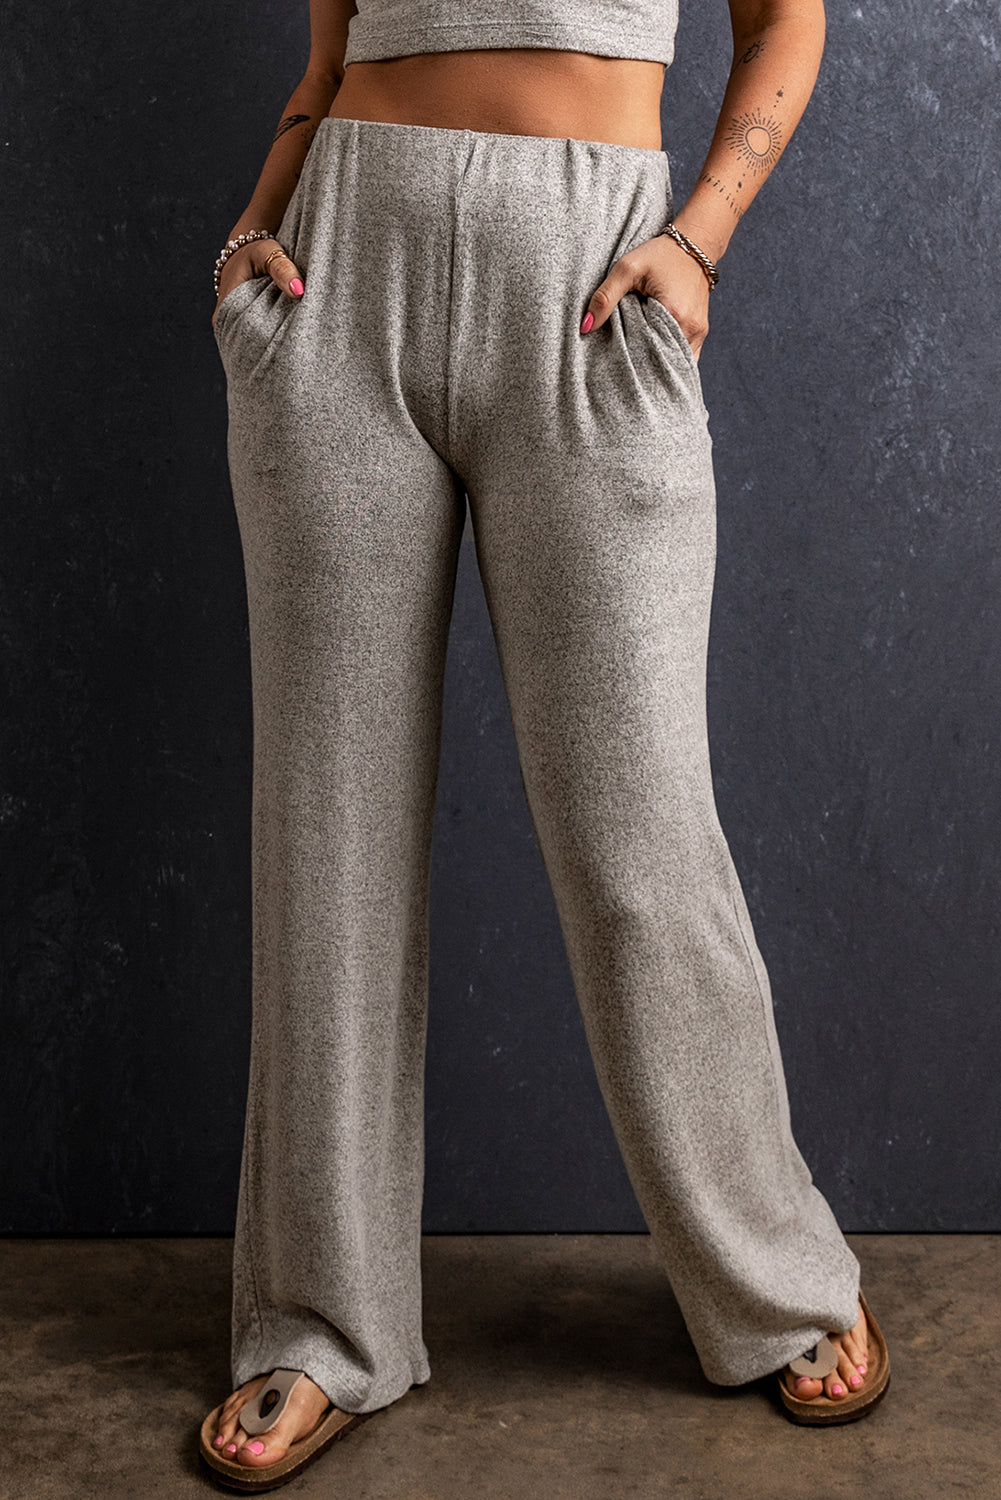 Pantaloni dritti larghi con tasche in vita elastica grigio chiaro